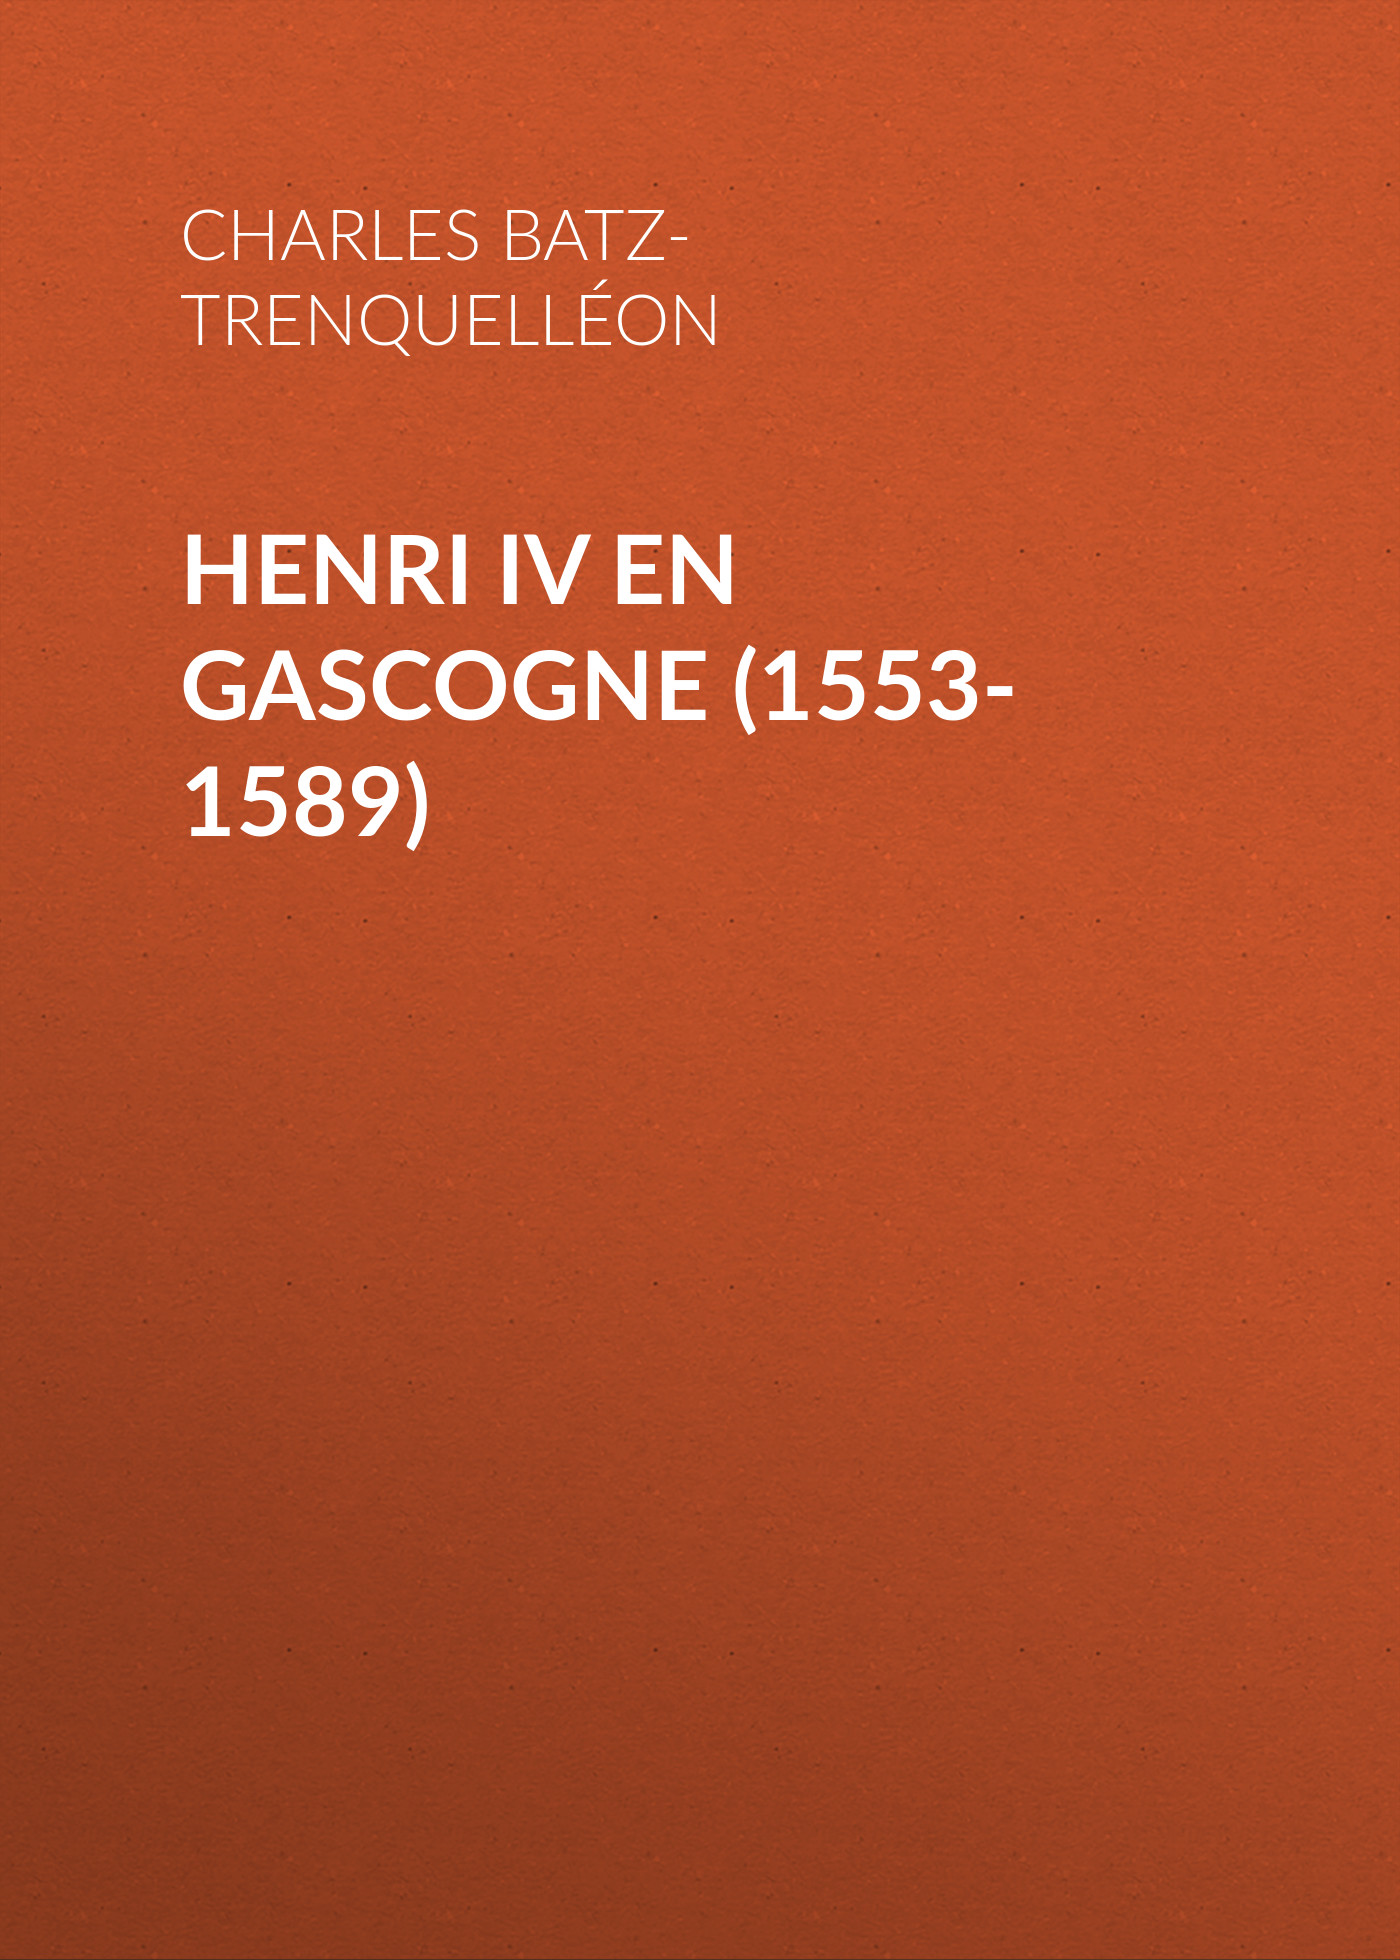 Книга Henri IV en Gascogne (1553-1589) из серии , созданная Charles Batz-Trenquelléon, может относится к жанру Зарубежная старинная литература, Зарубежная классика. Стоимость электронной книги Henri IV en Gascogne (1553-1589) с идентификатором 24177524 составляет 0 руб.